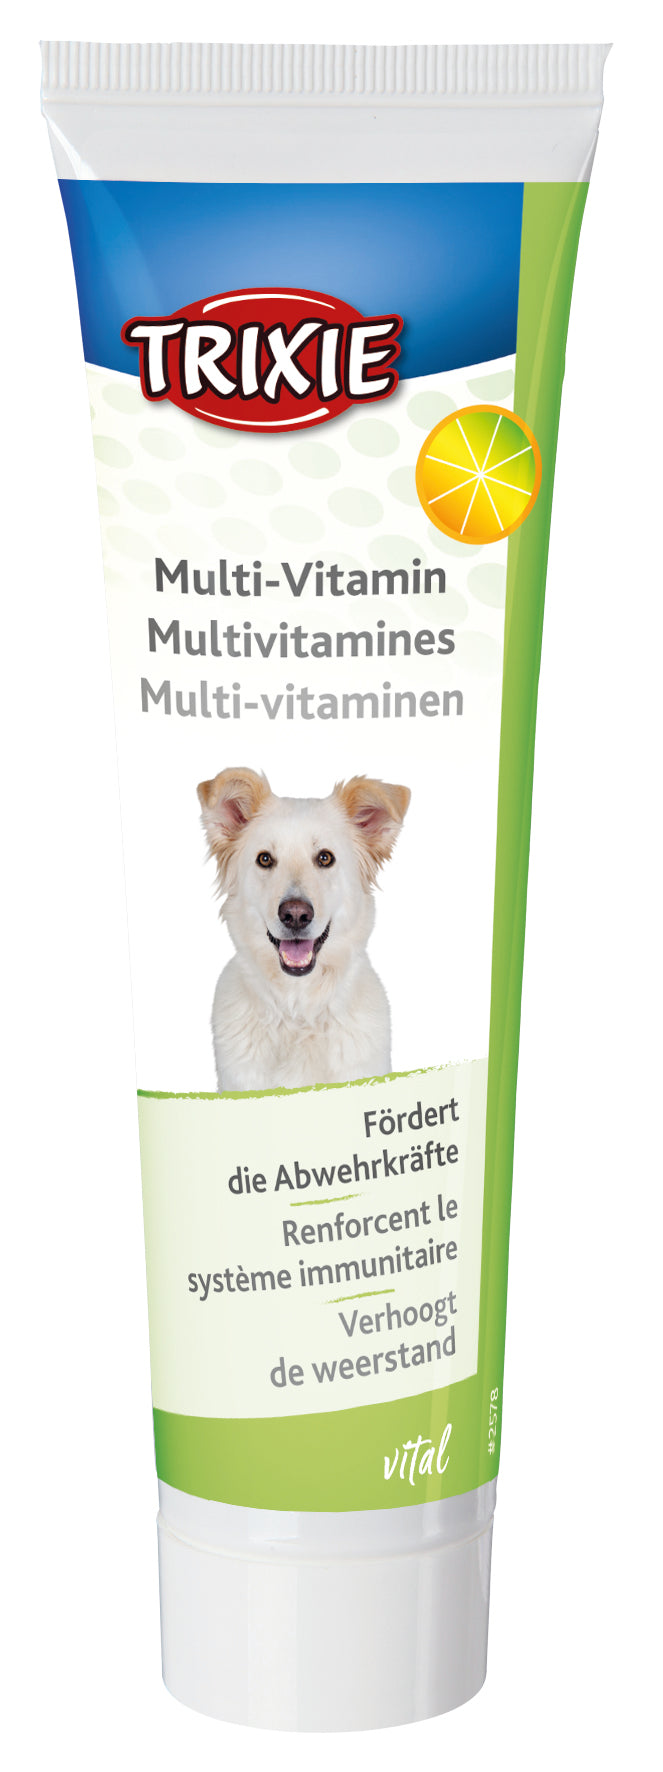 TRIXIE Multi-Vitamin paste for dogs